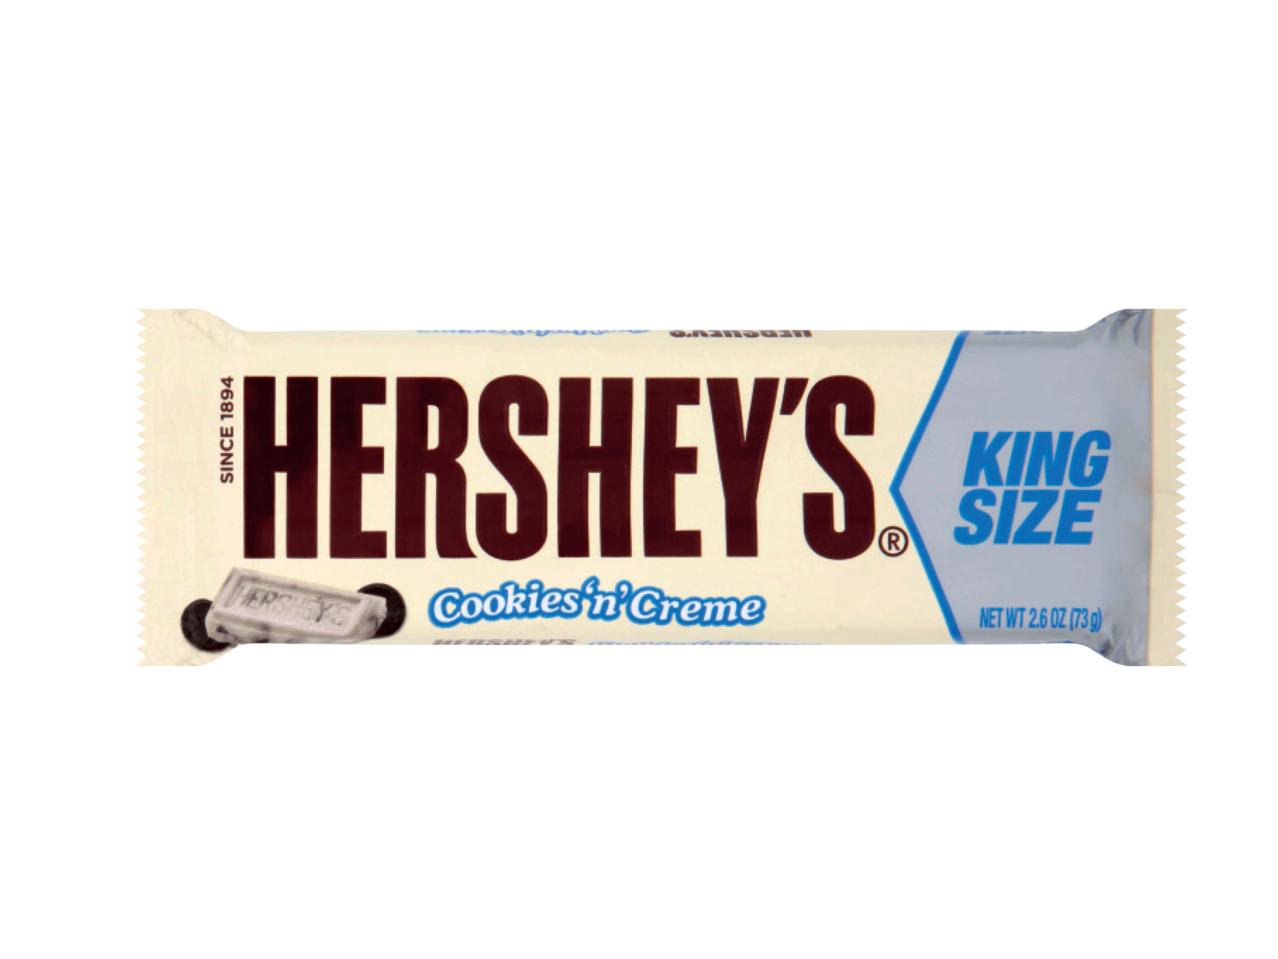 HERSHEY'S Cookies ‘n' Cream Kingsize